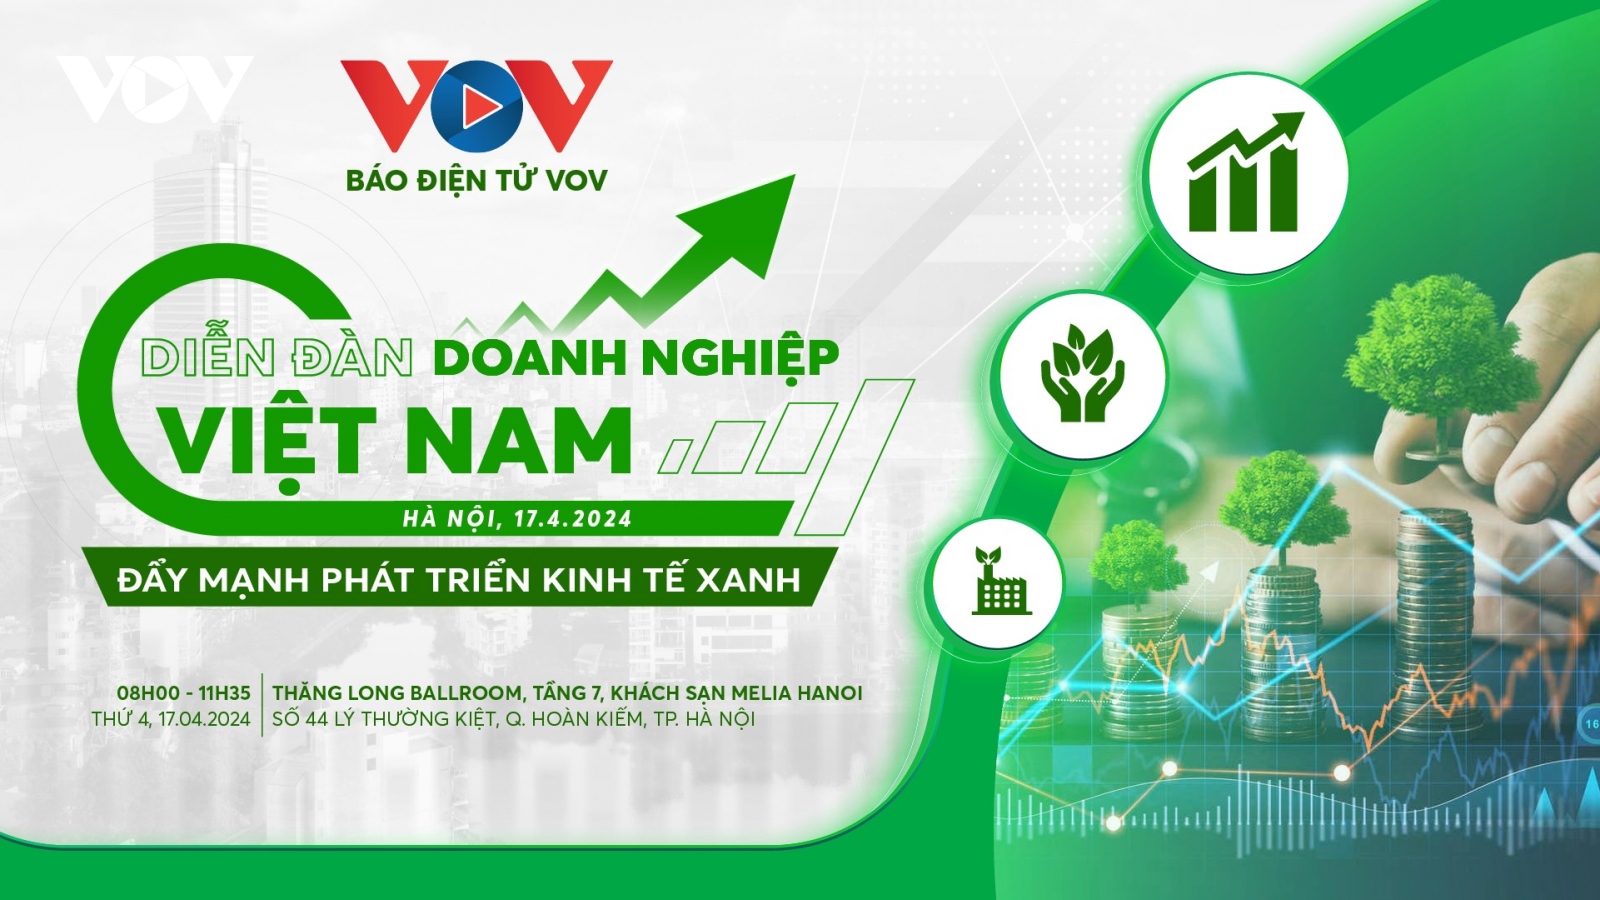 Trực tiếp Diễn đàn doanh nghiệp Việt Nam: Đẩy mạnh phát triển kinh tế xanh